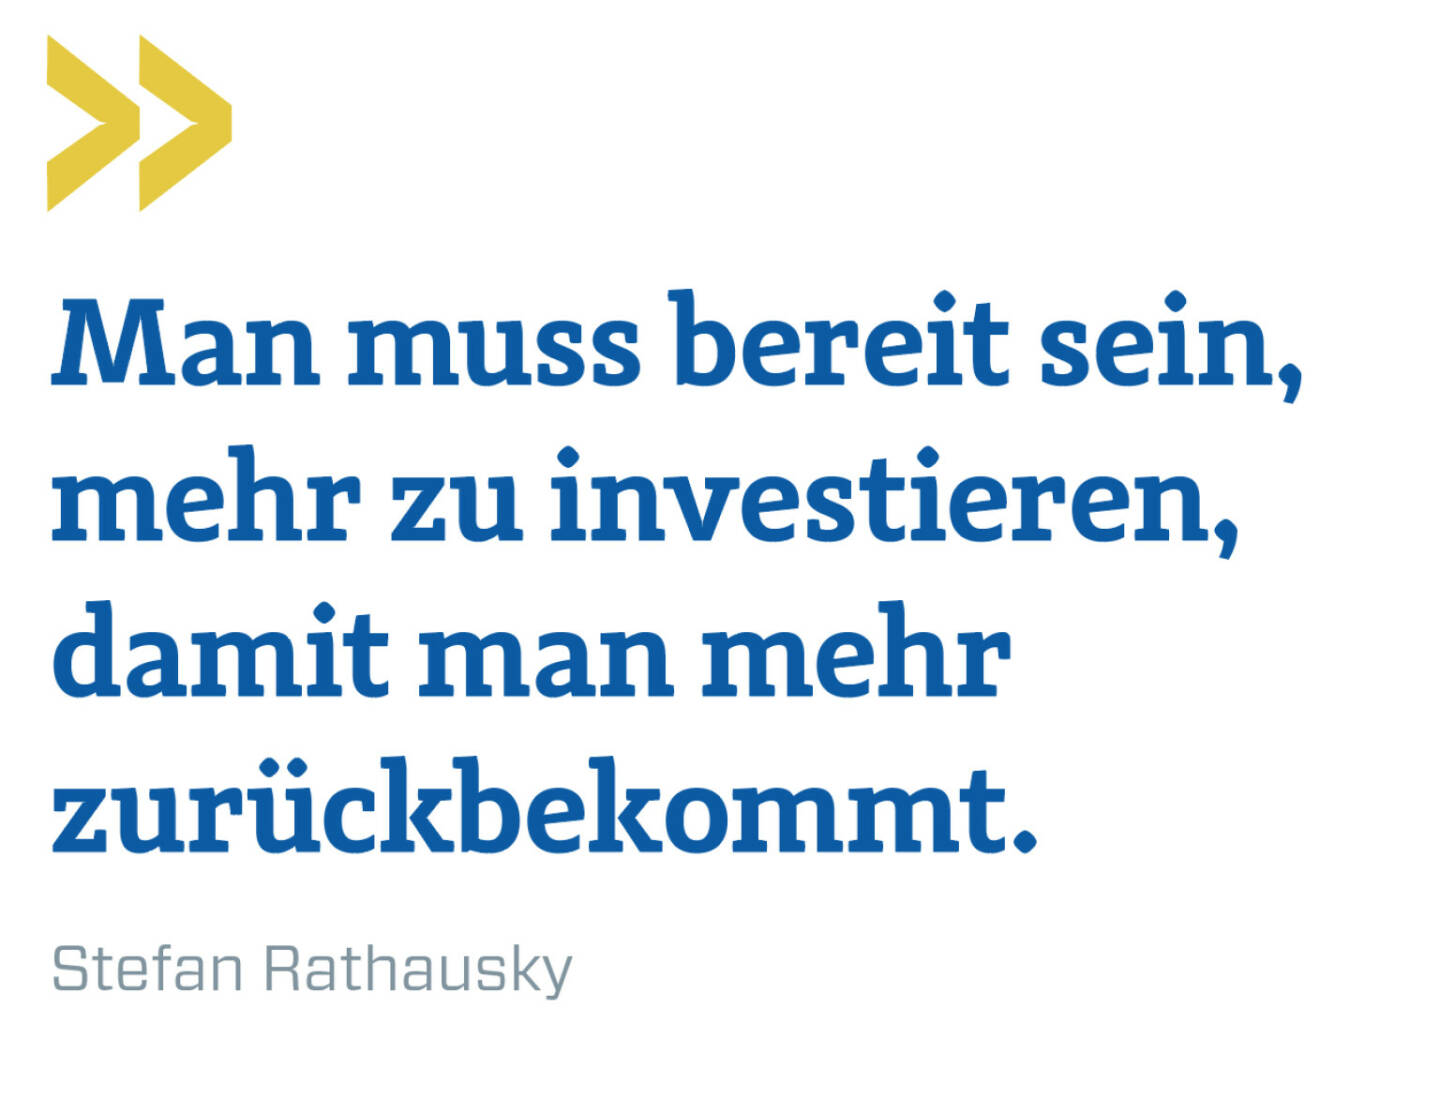 Man muss bereit sein, mehr zu investieren, damit man mehr zurückbekommt. 
Stefan Rathausky